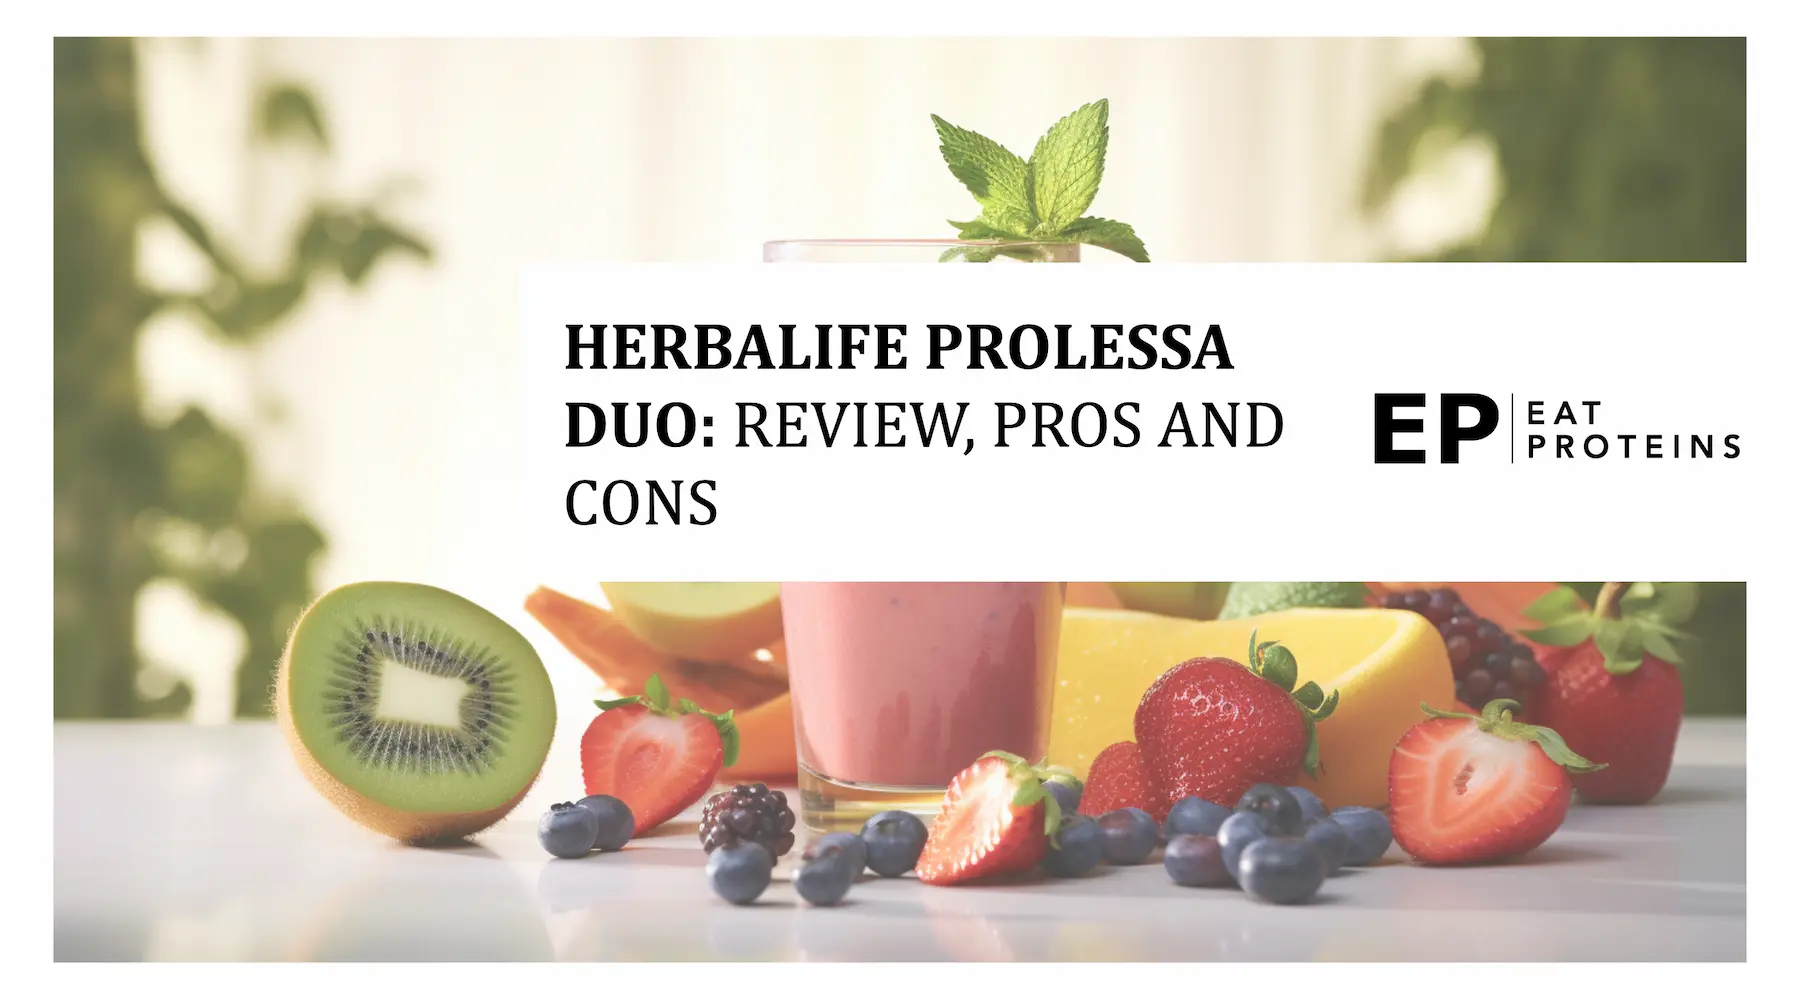 Herbalife prolessa reviews